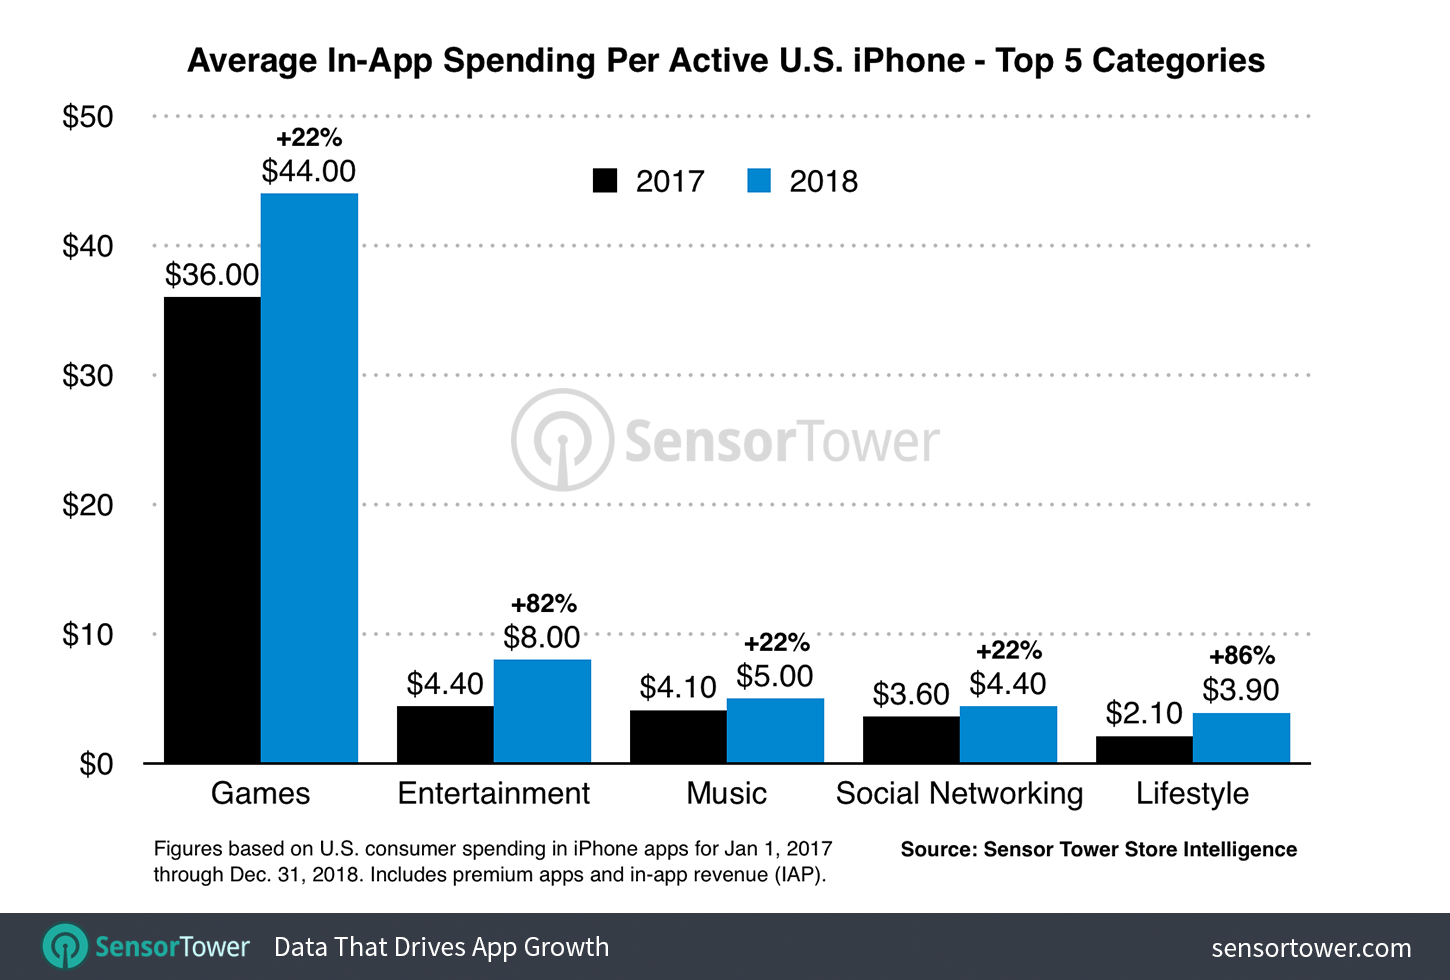 Los usuarios de iOS gastaron 79 dólares en apps en 2018, un 36% más que el año anterior